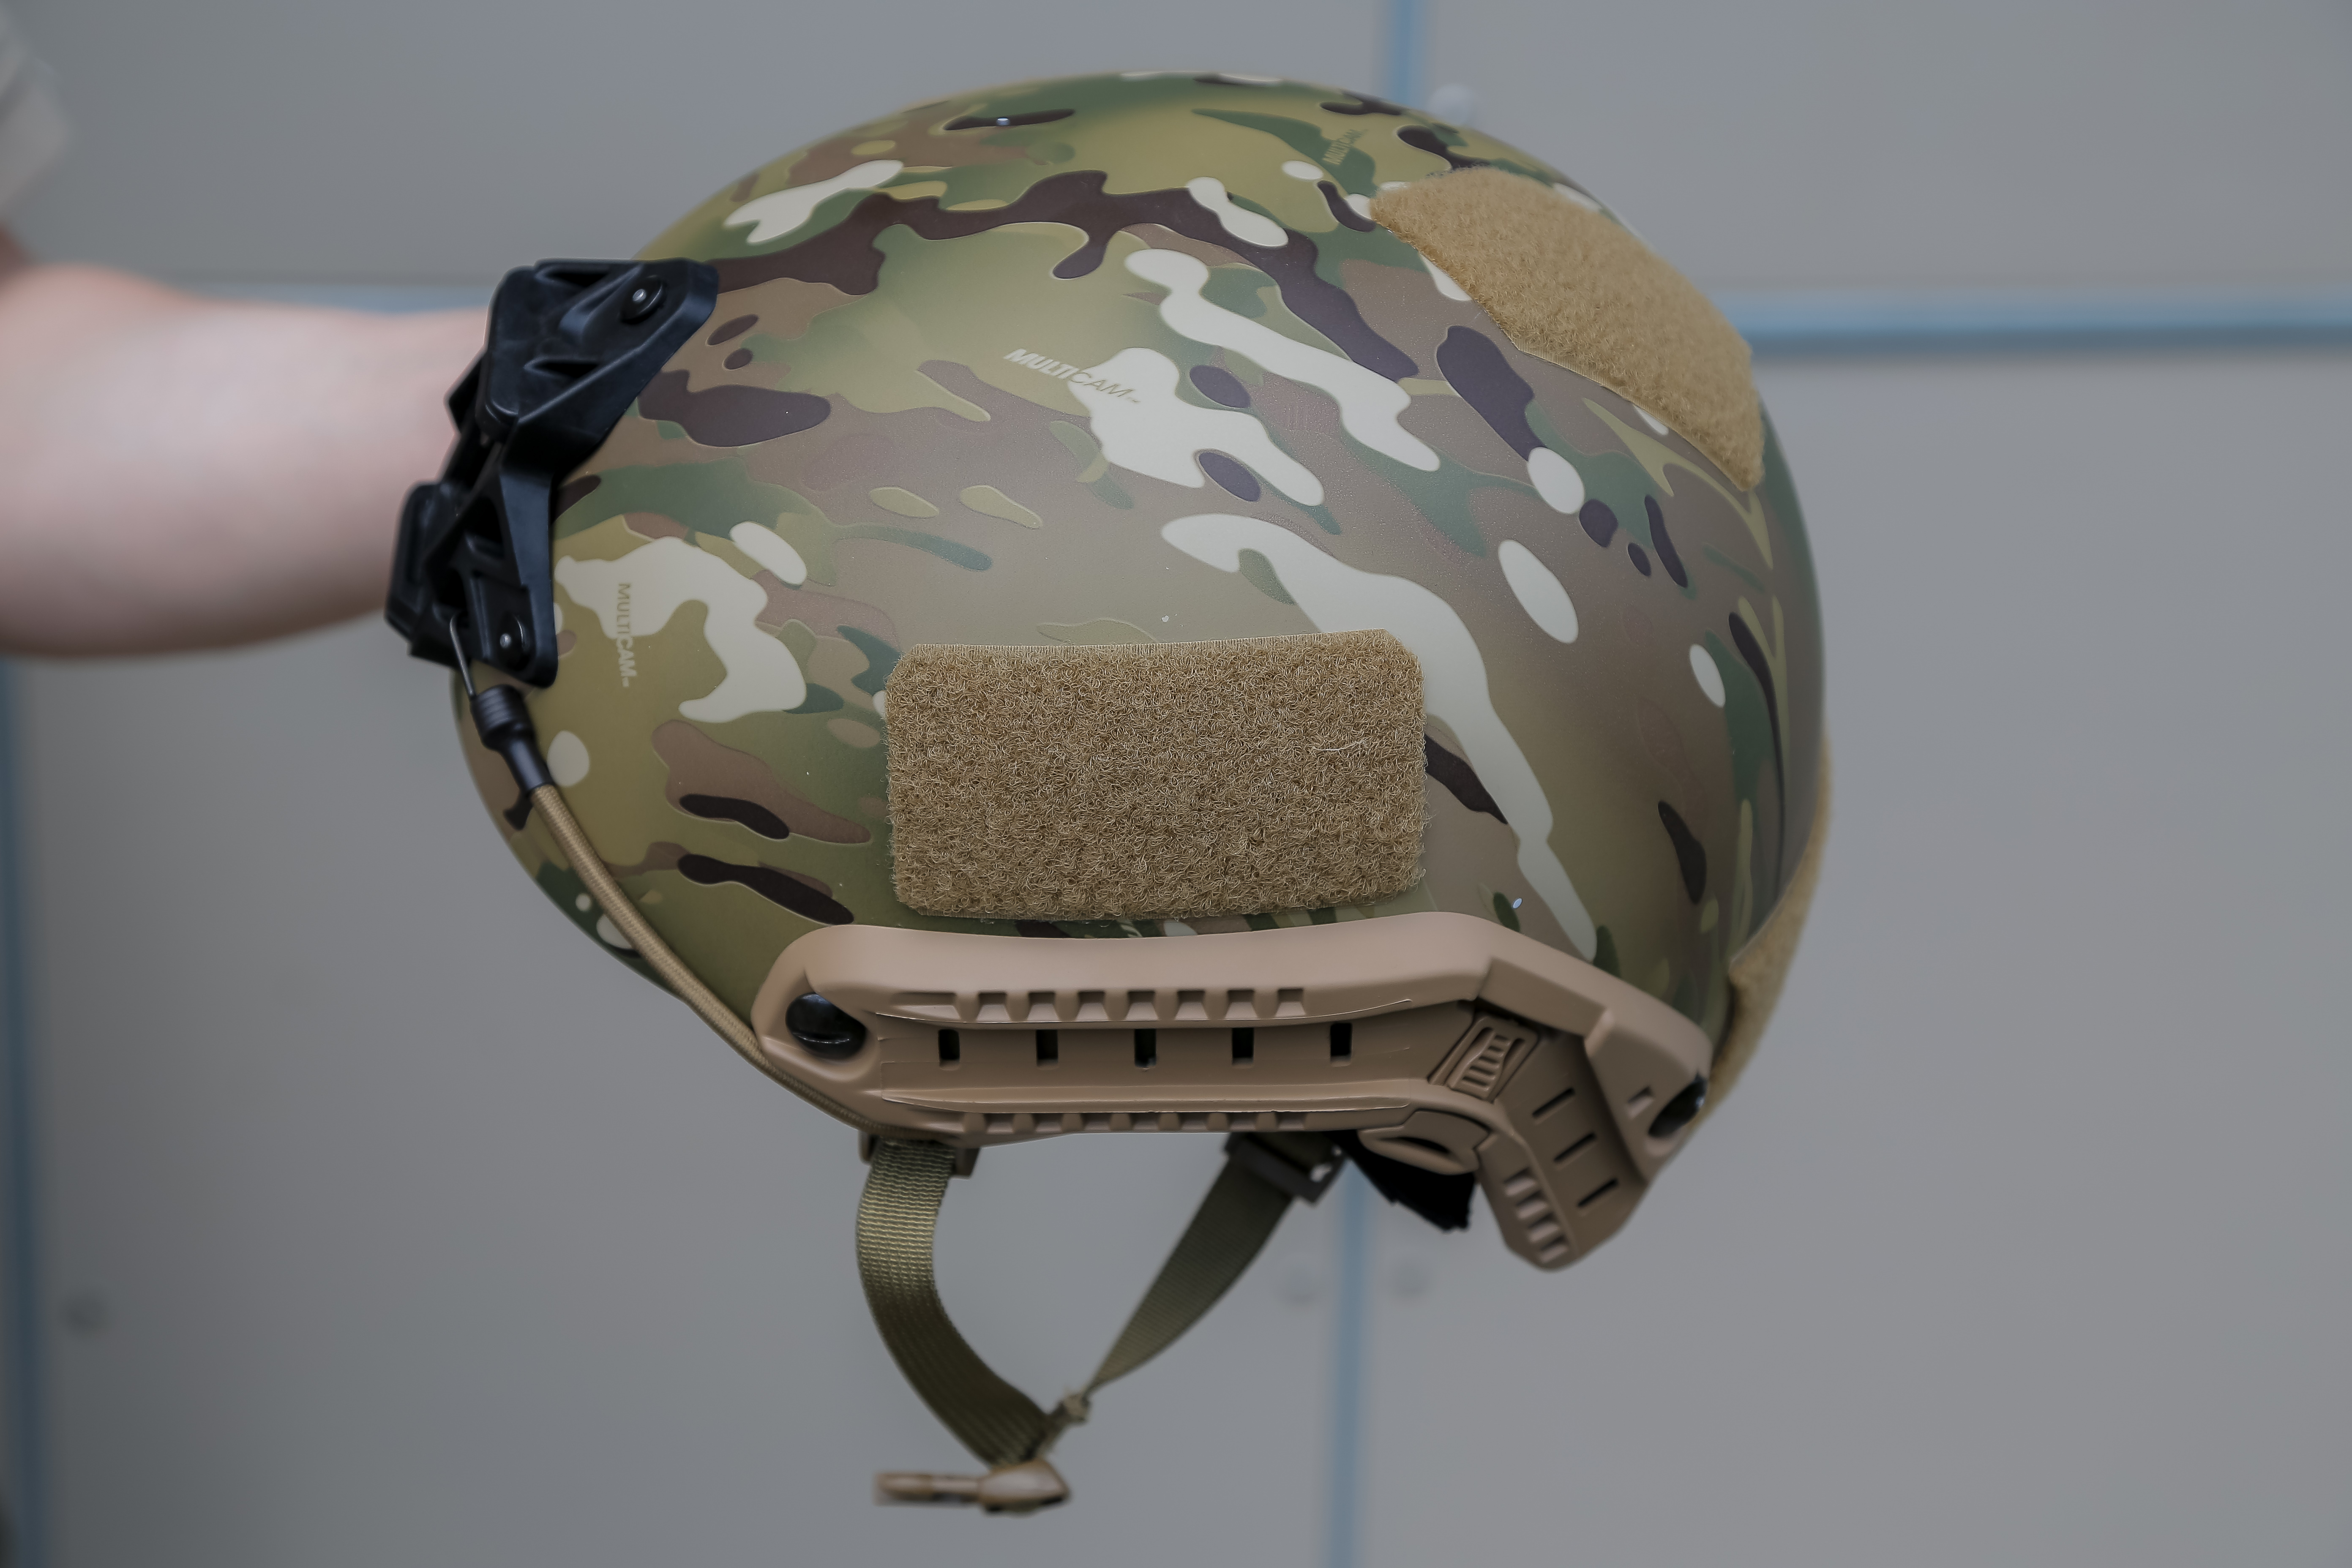  Новый защитный шлем позволяет крепить различное дополнительное оборудование от приборов ночного виденья до фонарей